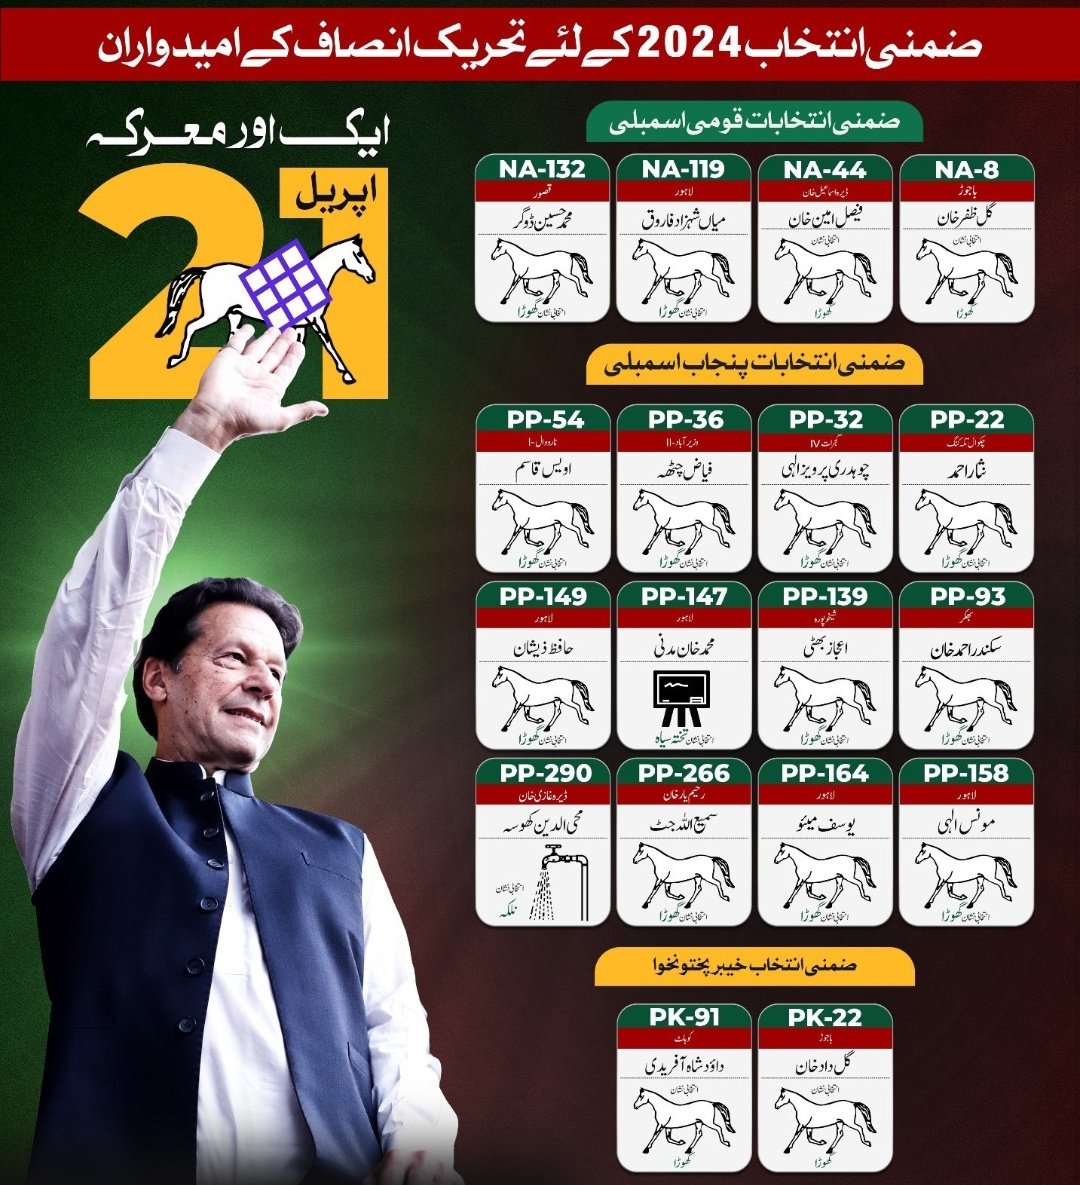 جس نشان کے ساتھ کپتان جوڑ جاۓ گا وہ جیت کا نشان ہو گا۔ #ووٹ_عمران_خان_کا #VoteForImranKhan @MashwaniAzhar